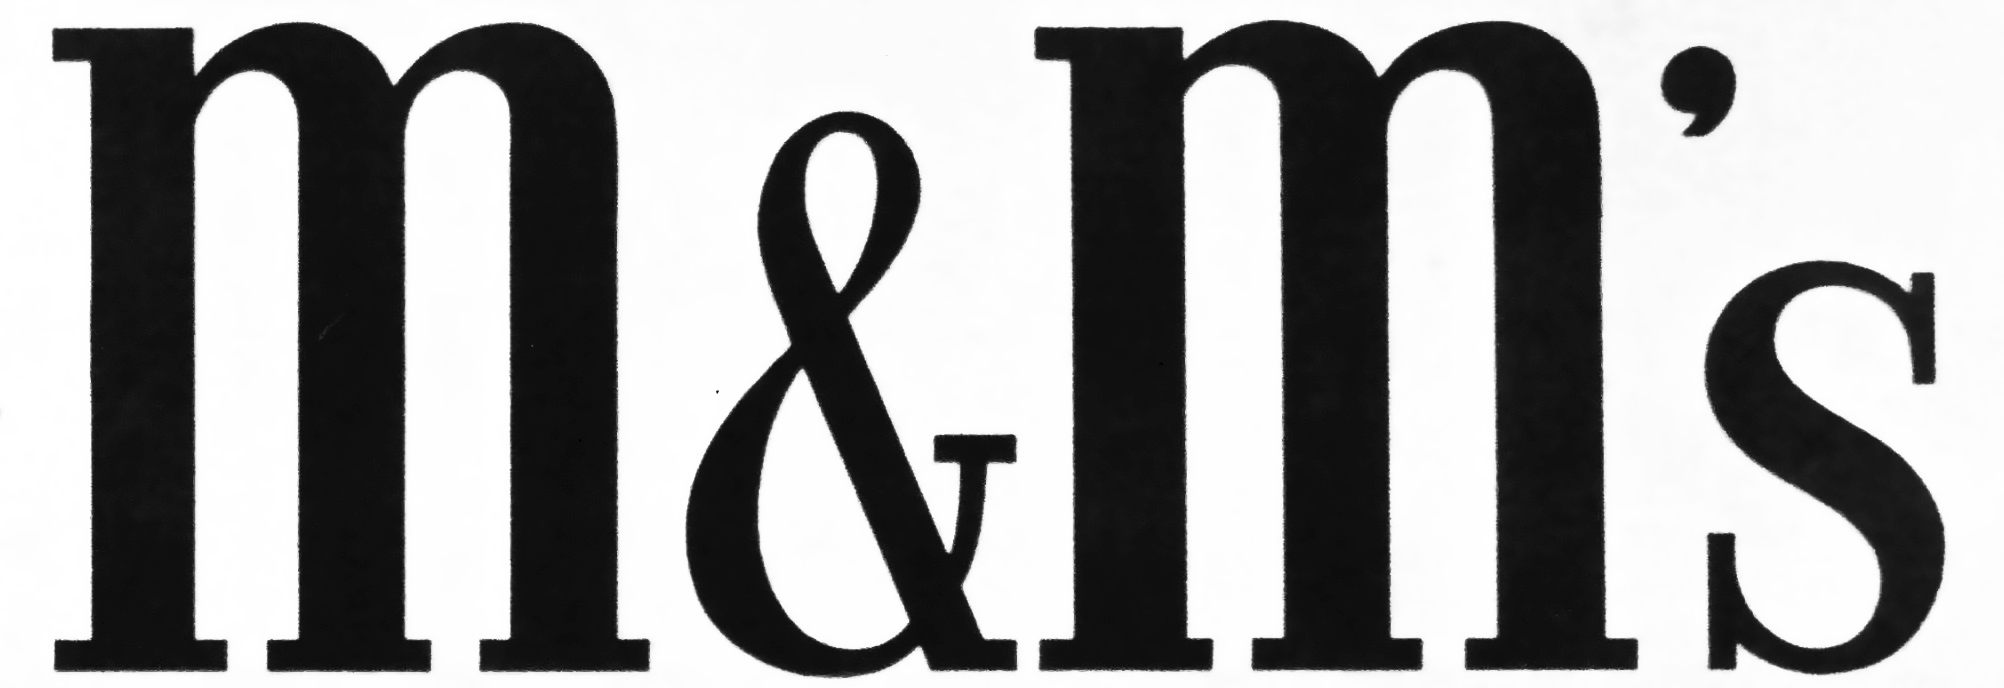 M&M's Logo - M&M's | Logopedia | FANDOM powered by Wikia